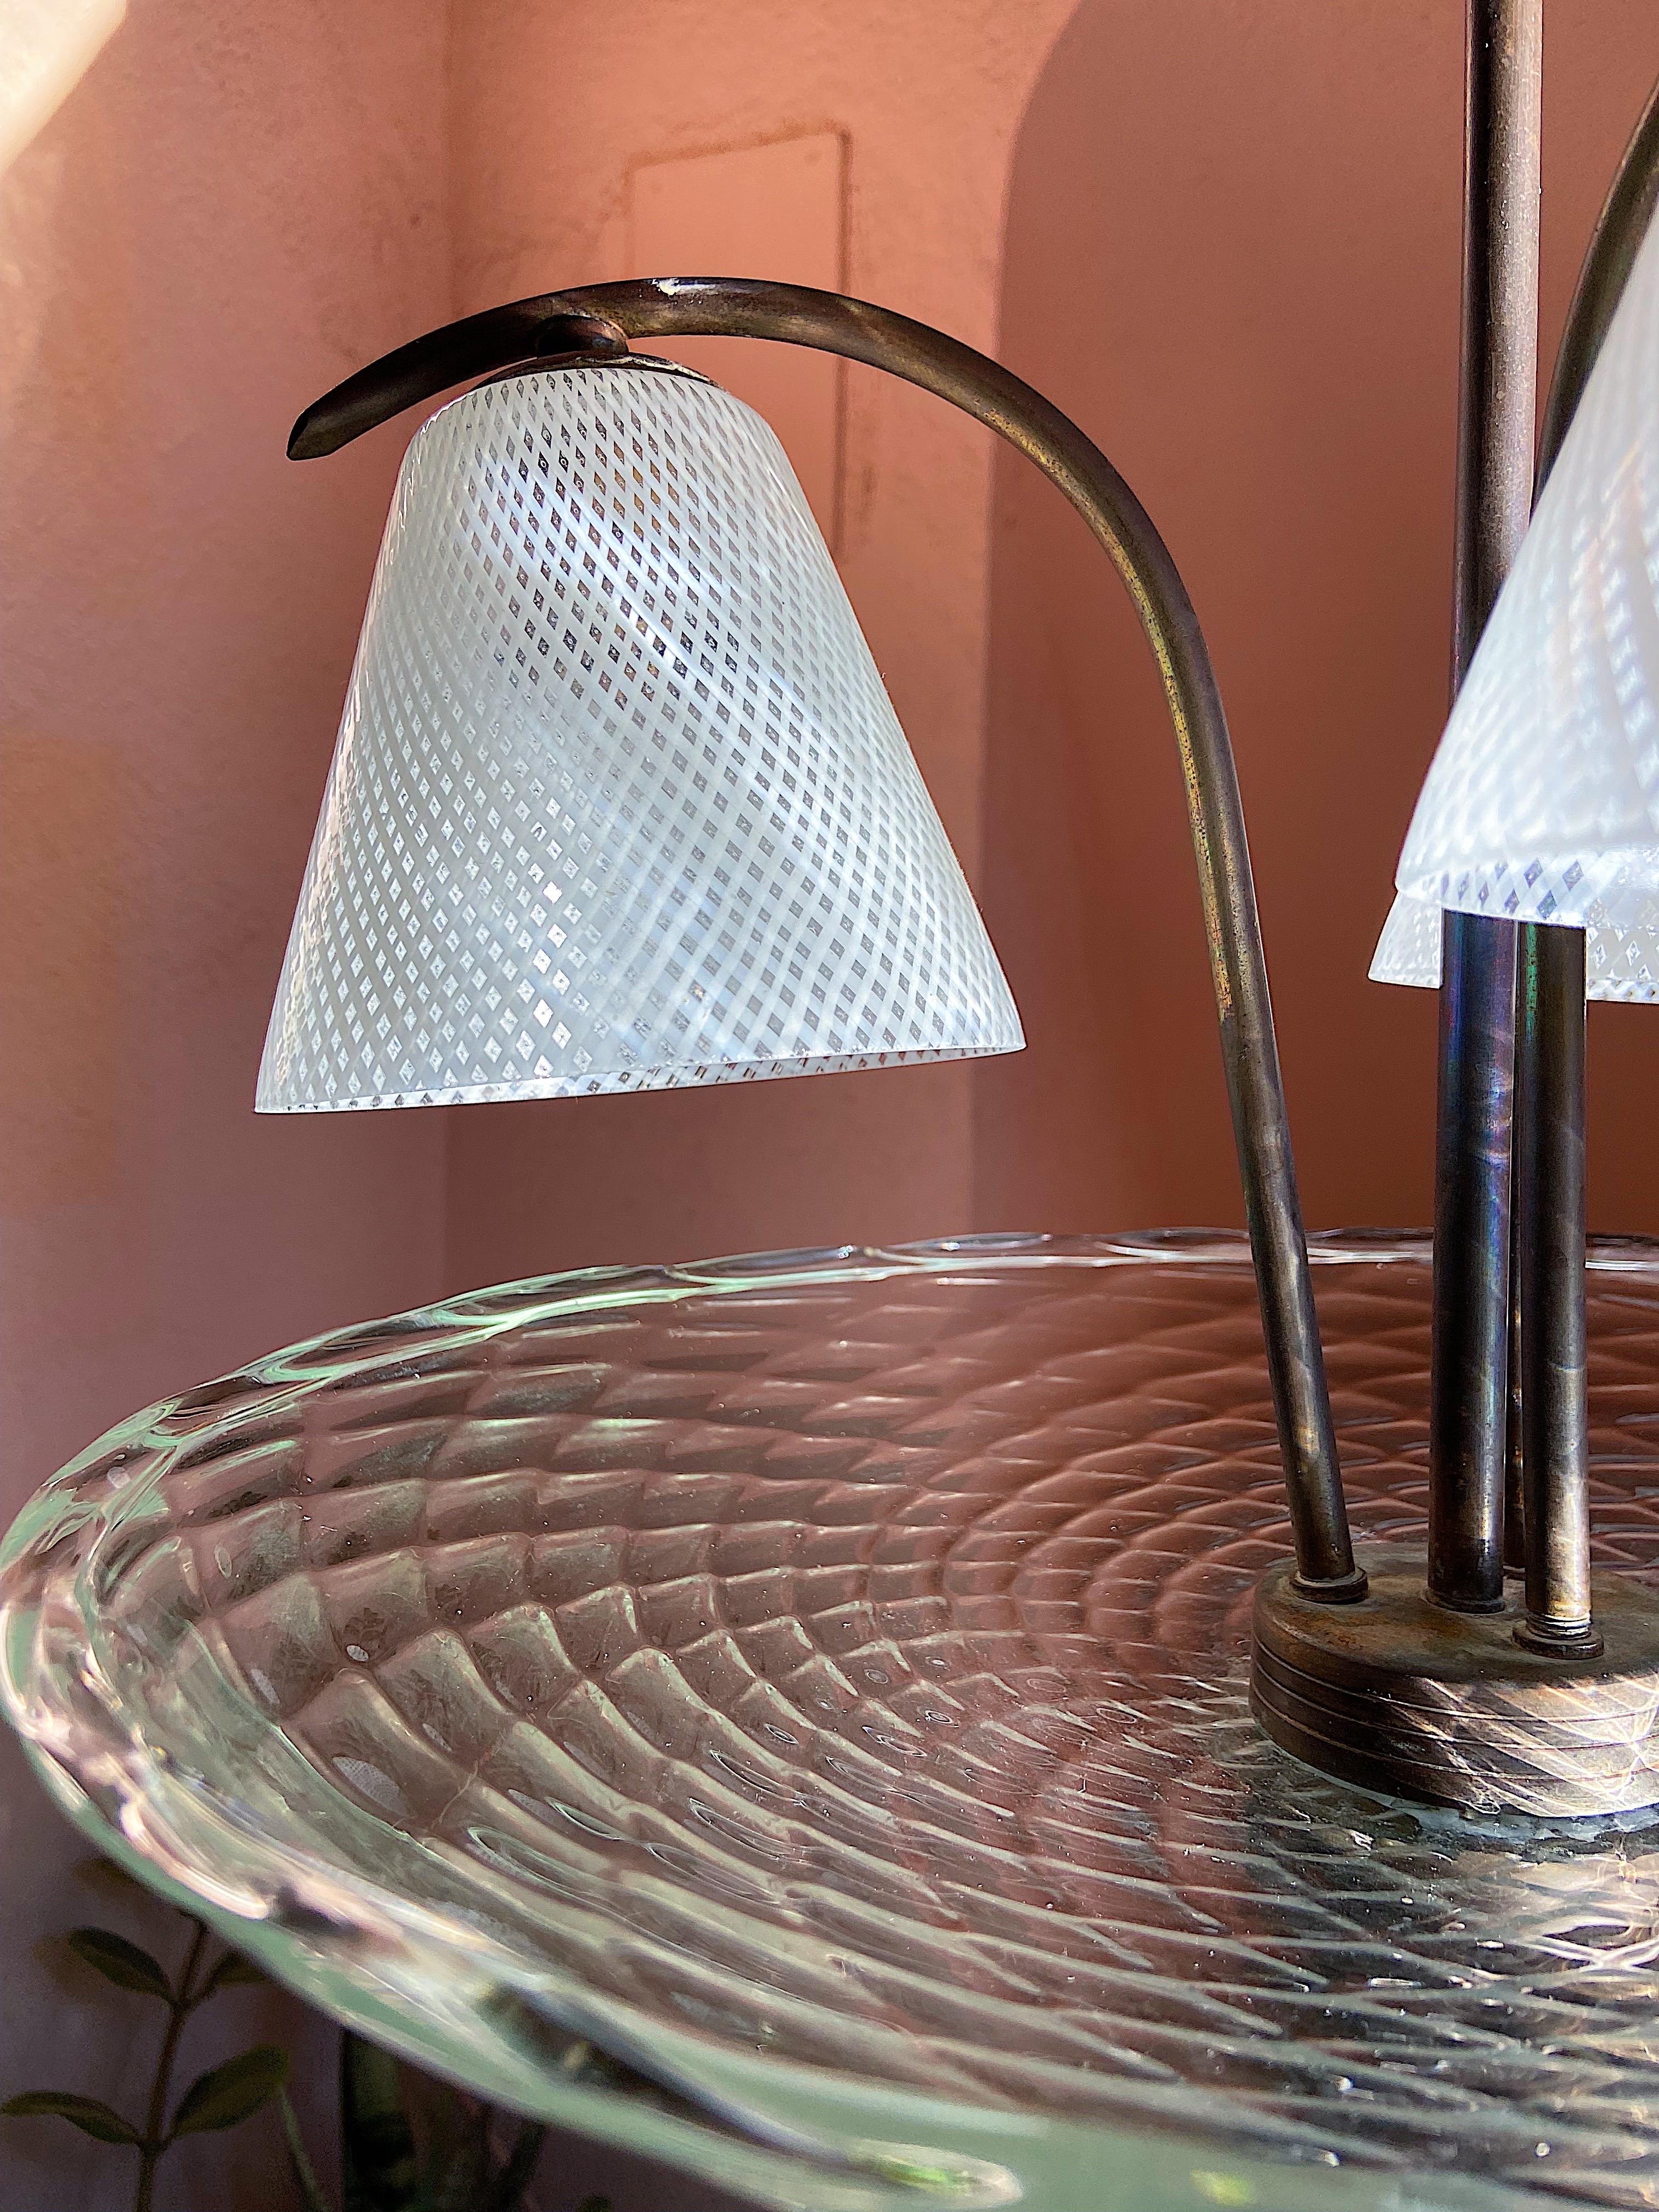 Lustre en verre de Murano, Design/One, Murano, années 1940.
Elle est réalisée en verre d'art de Murano et se compose de 3 cônes en verre posés sur une base en laiton.
Le verre est fabriqué selon la technique dite du Reticello ou Doppia Filigrana,